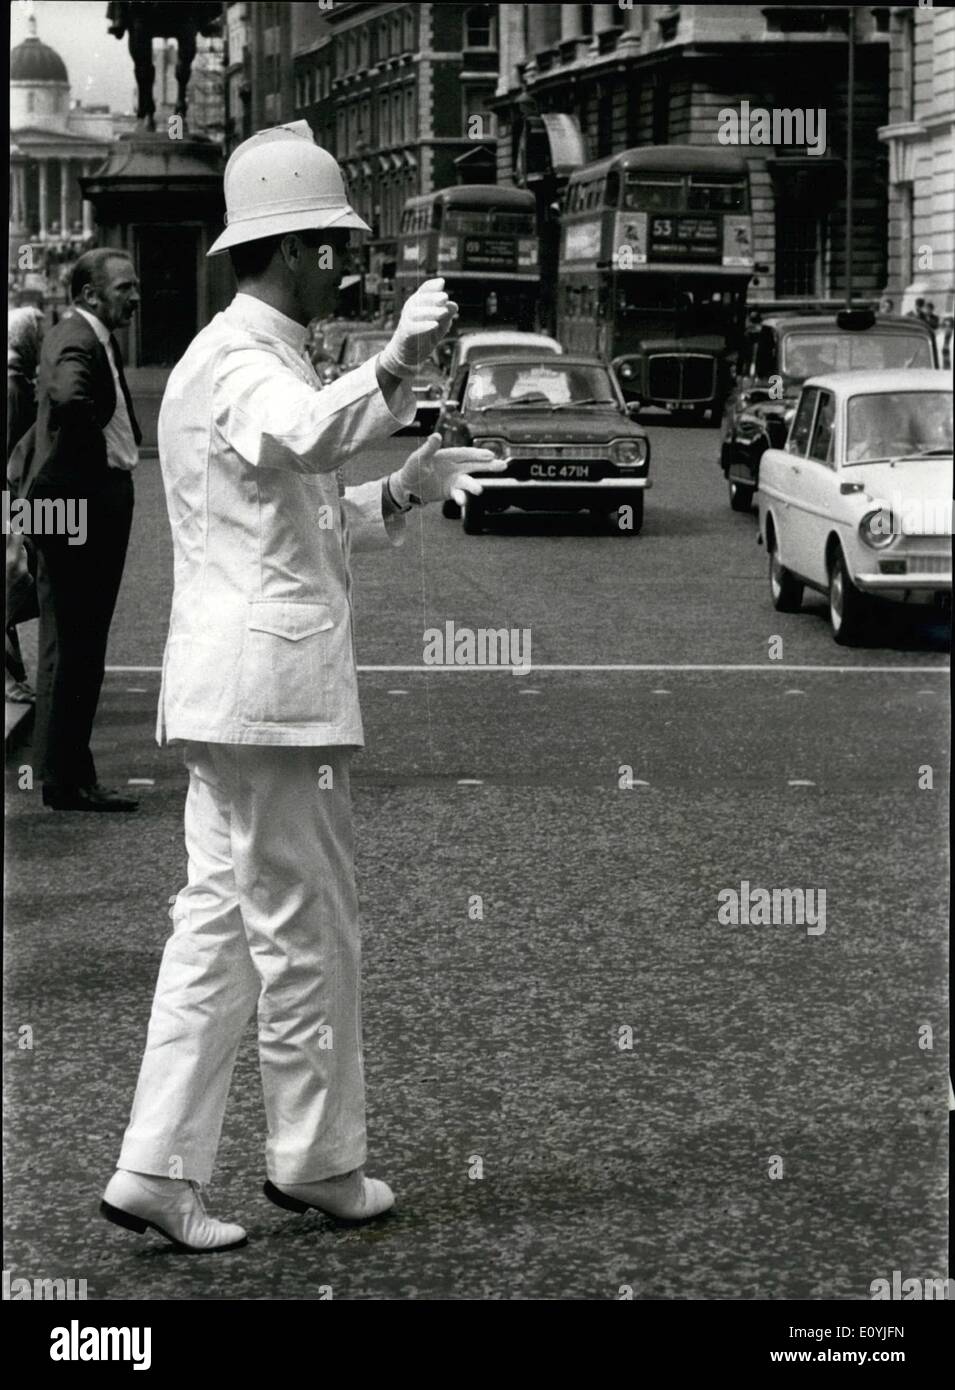 Juillet 07, 1970 - La danse yougoslave policier à Londres. Dans le cadre de la British European Airways Fly, un programme est policier yougoslave est sur une visite de courtoisie à Londres. Il est l'un des principaux danseurs masculins dans la compagnie de ballet de Belgrade. L'article 6ft. 6 Dans dans son uniforme de cérémonie (complet avec l'axe casque), cet après-midi il s'est rendu compte qu'une ambition pour diriger la circulation de Londres en ballet classique de style. Il est 34 ans Jovan Bulj, par Belgrade et en service à la maison, il l'amuse les automobilistes et les piétons avec son mouvement de ballet. Photo Keystone montre : Jovan Bulj en action hier à Londres. Banque D'Images